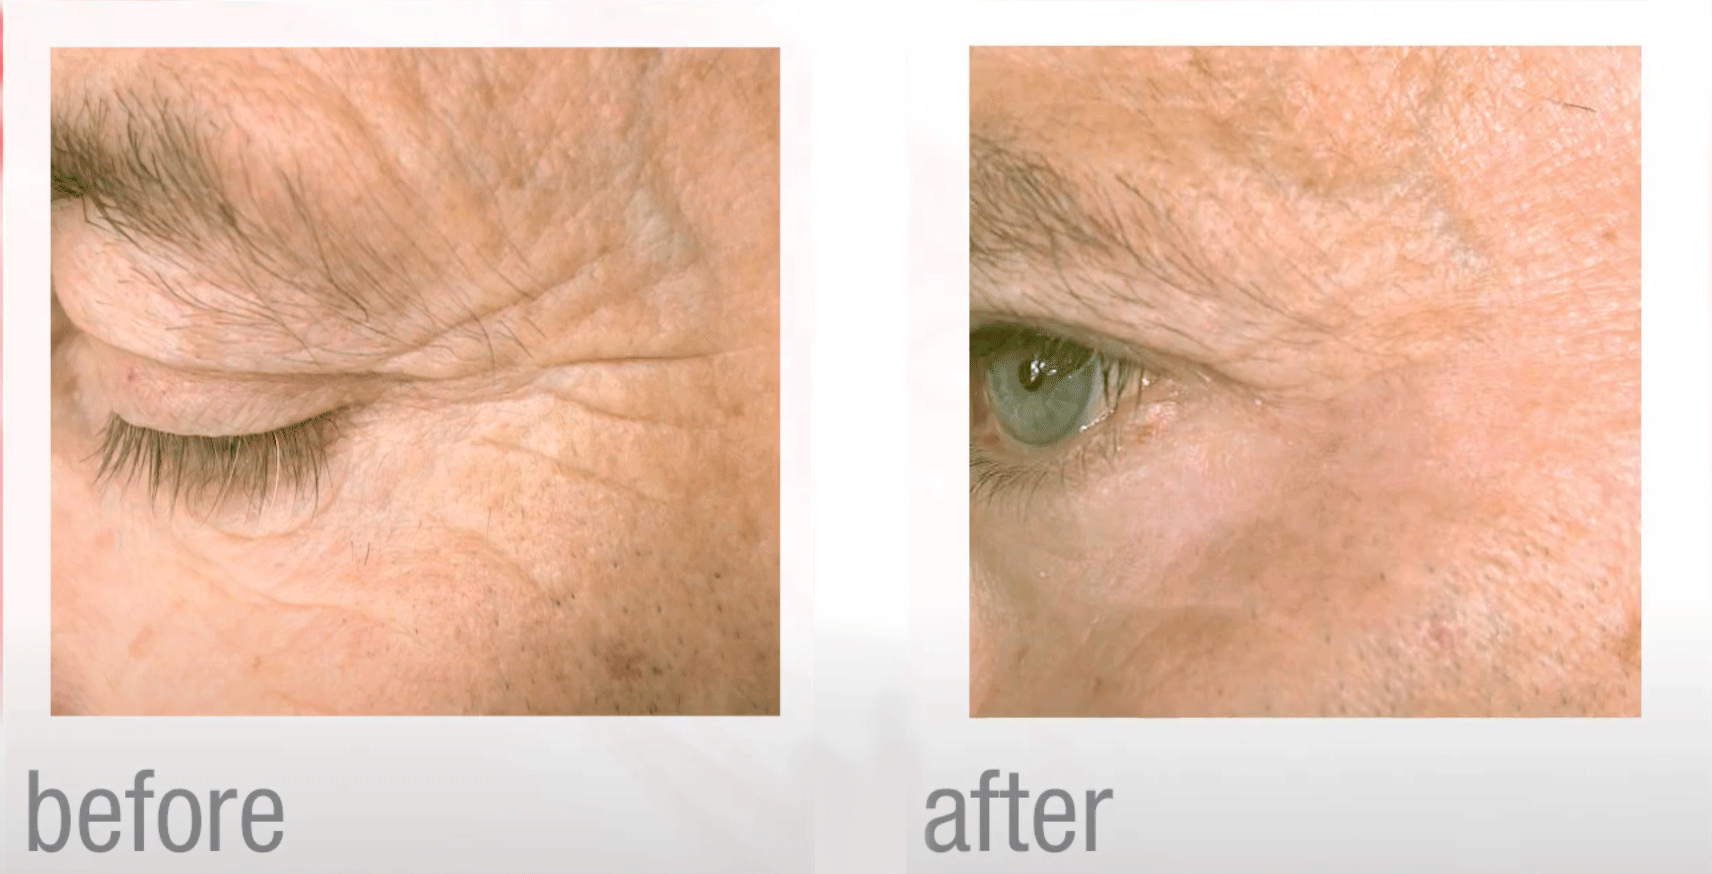 laser for skin resurfacing